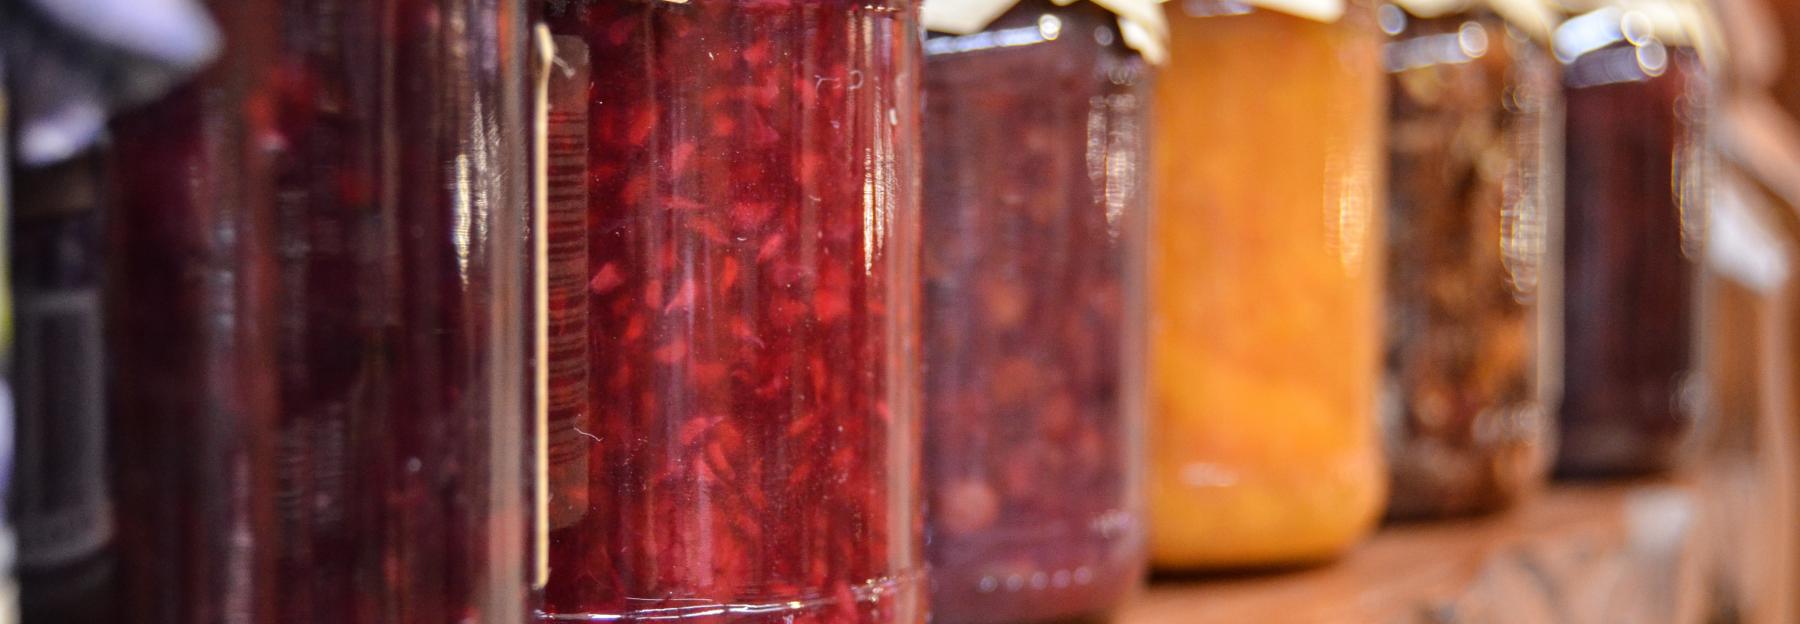 heimische Früchte, als Marmelade im Glas haltbar gemacht